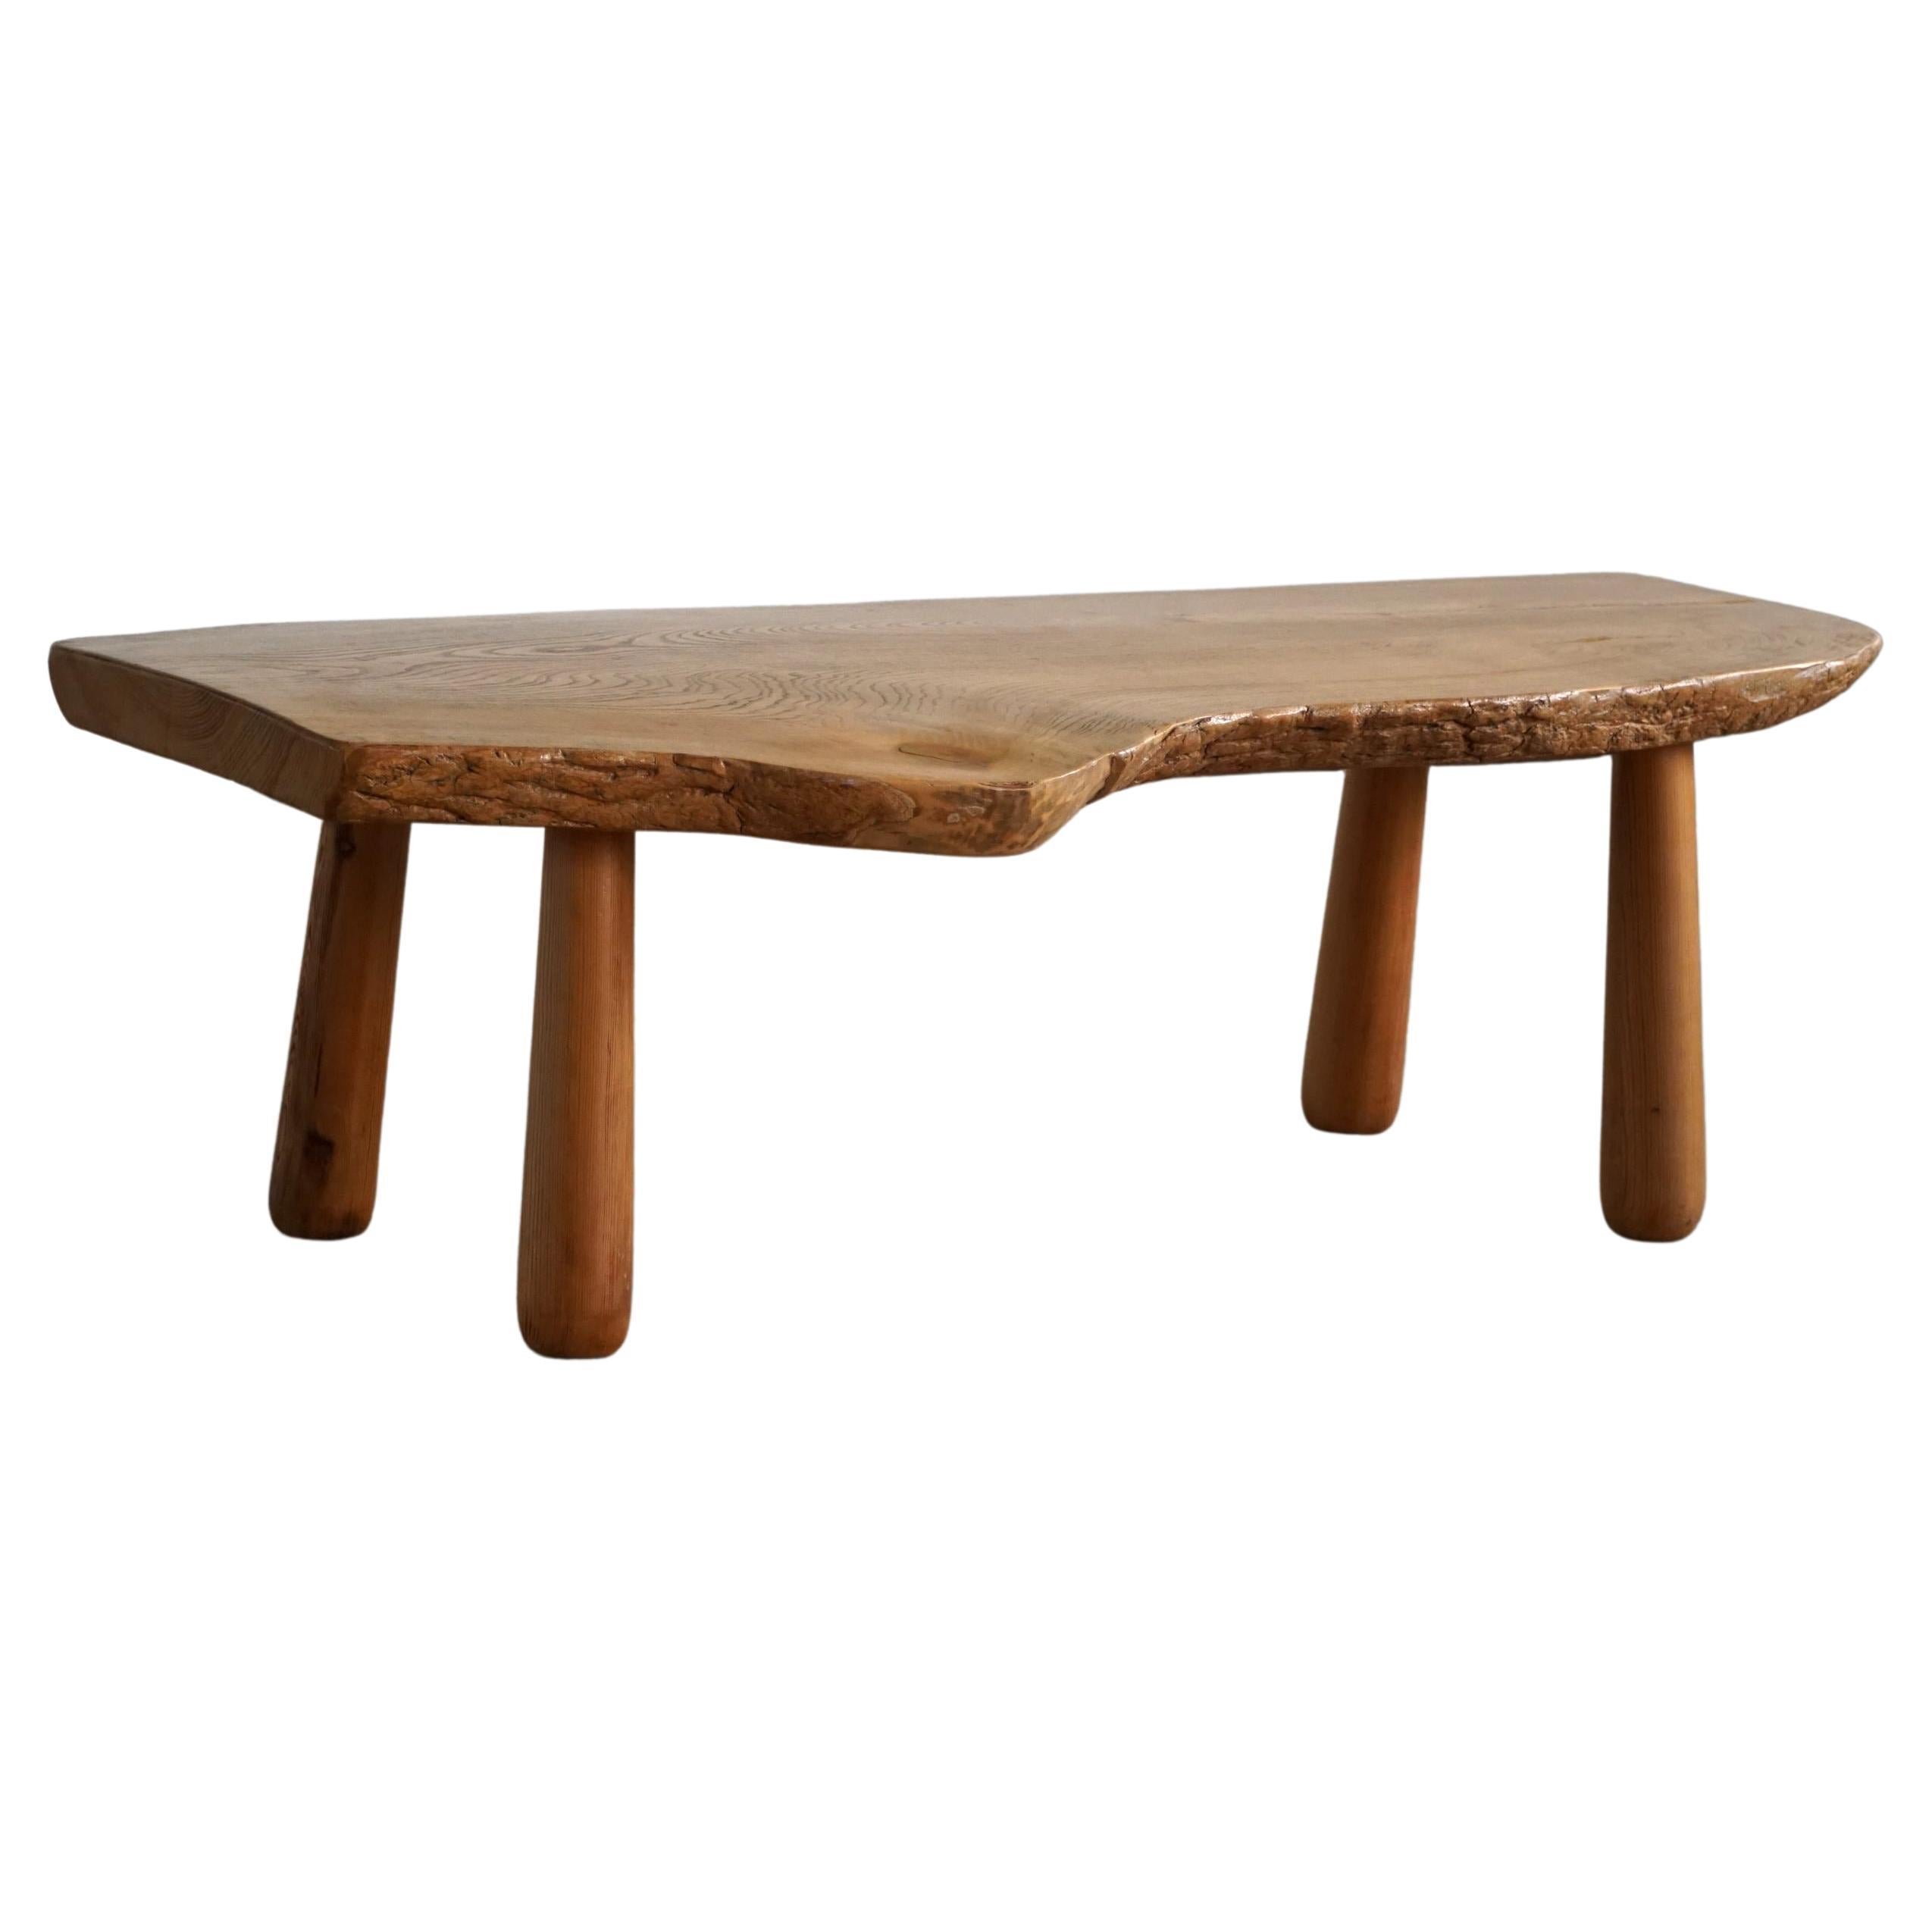 20th Century, Organic Table in Pine with Club Legs, Wabi Sabi, Swedish Modern